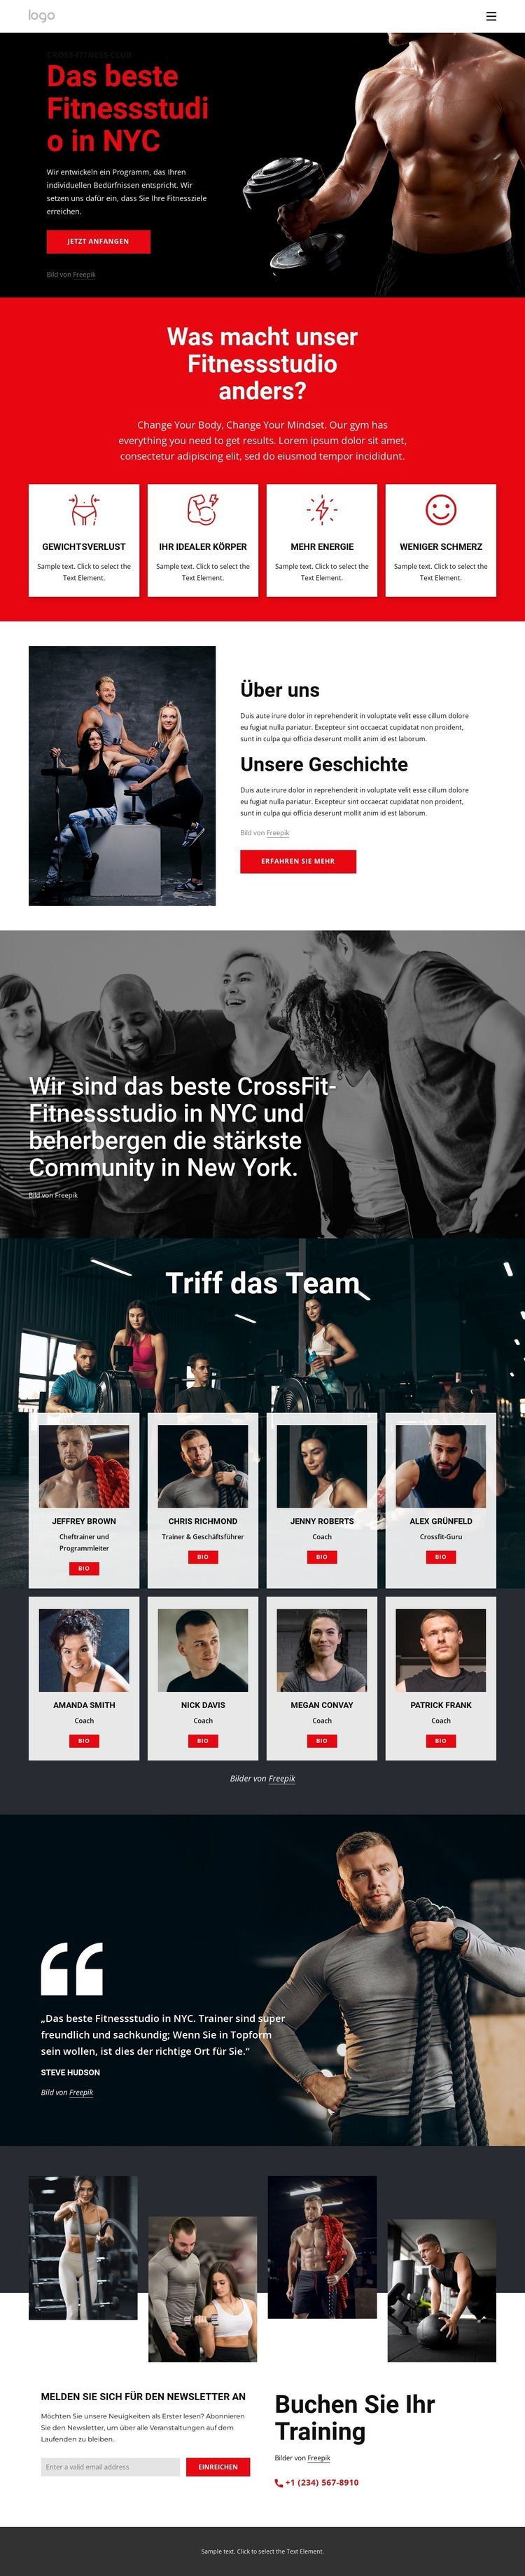 Das beste Crossfit-Fitnessstudio Eine Seitenvorlage